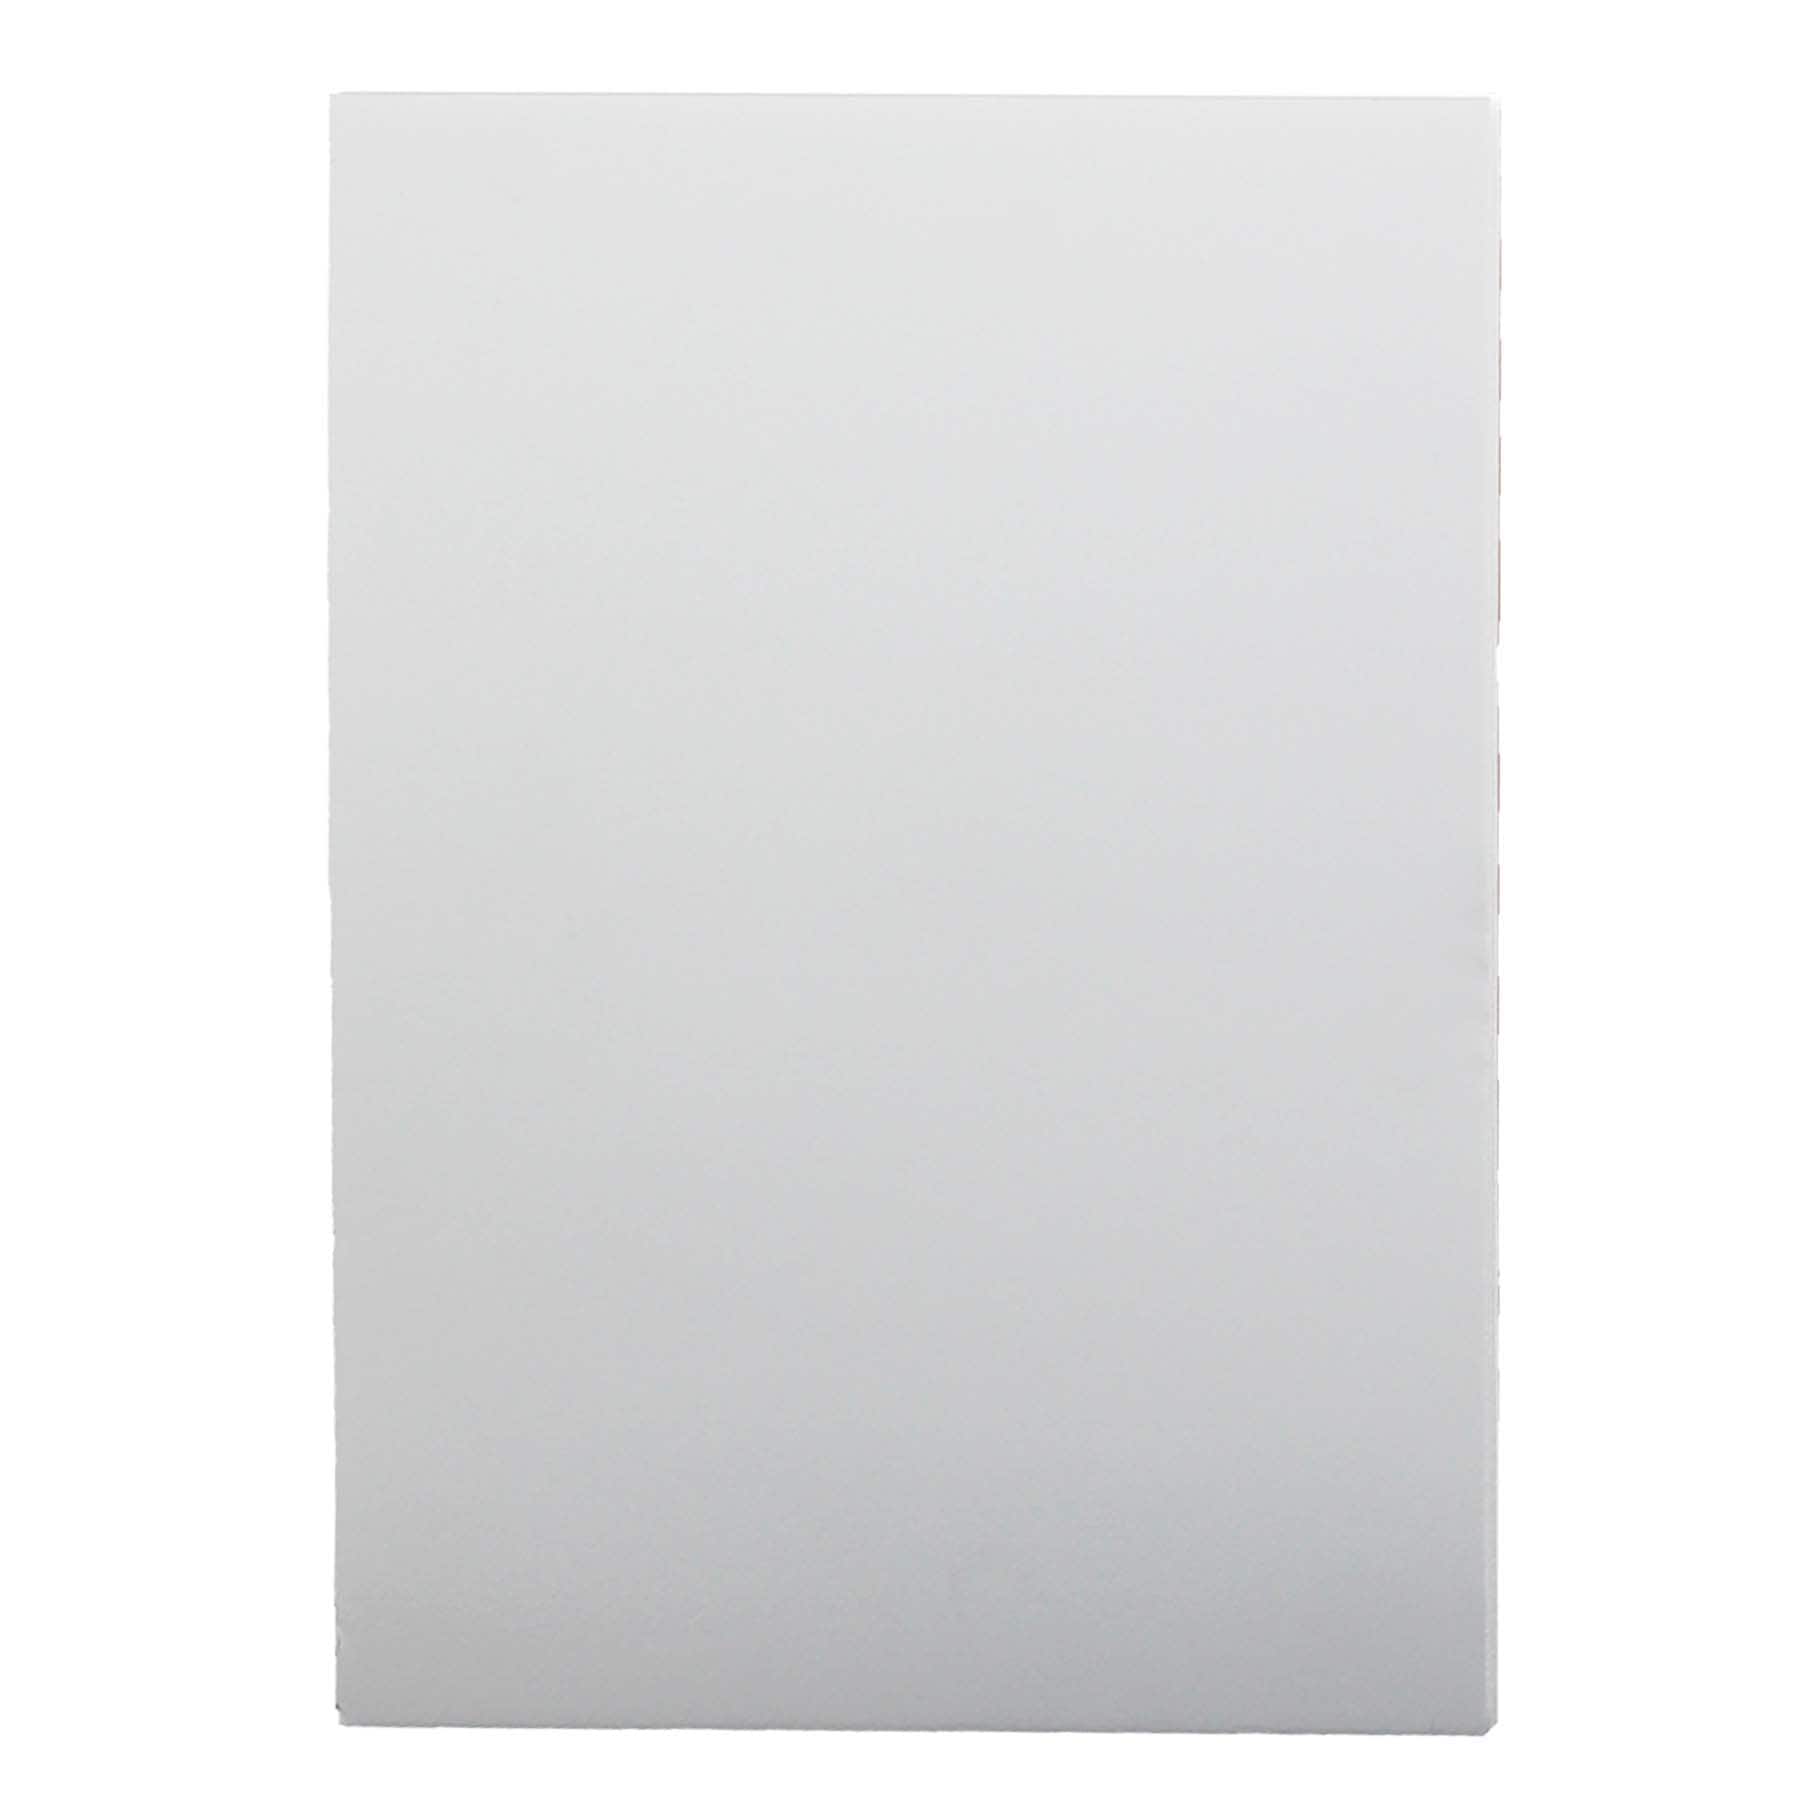 PerKoop 12 Pcs Foam Core Board 30 x 40 x 3/16 (5mm) White Poster